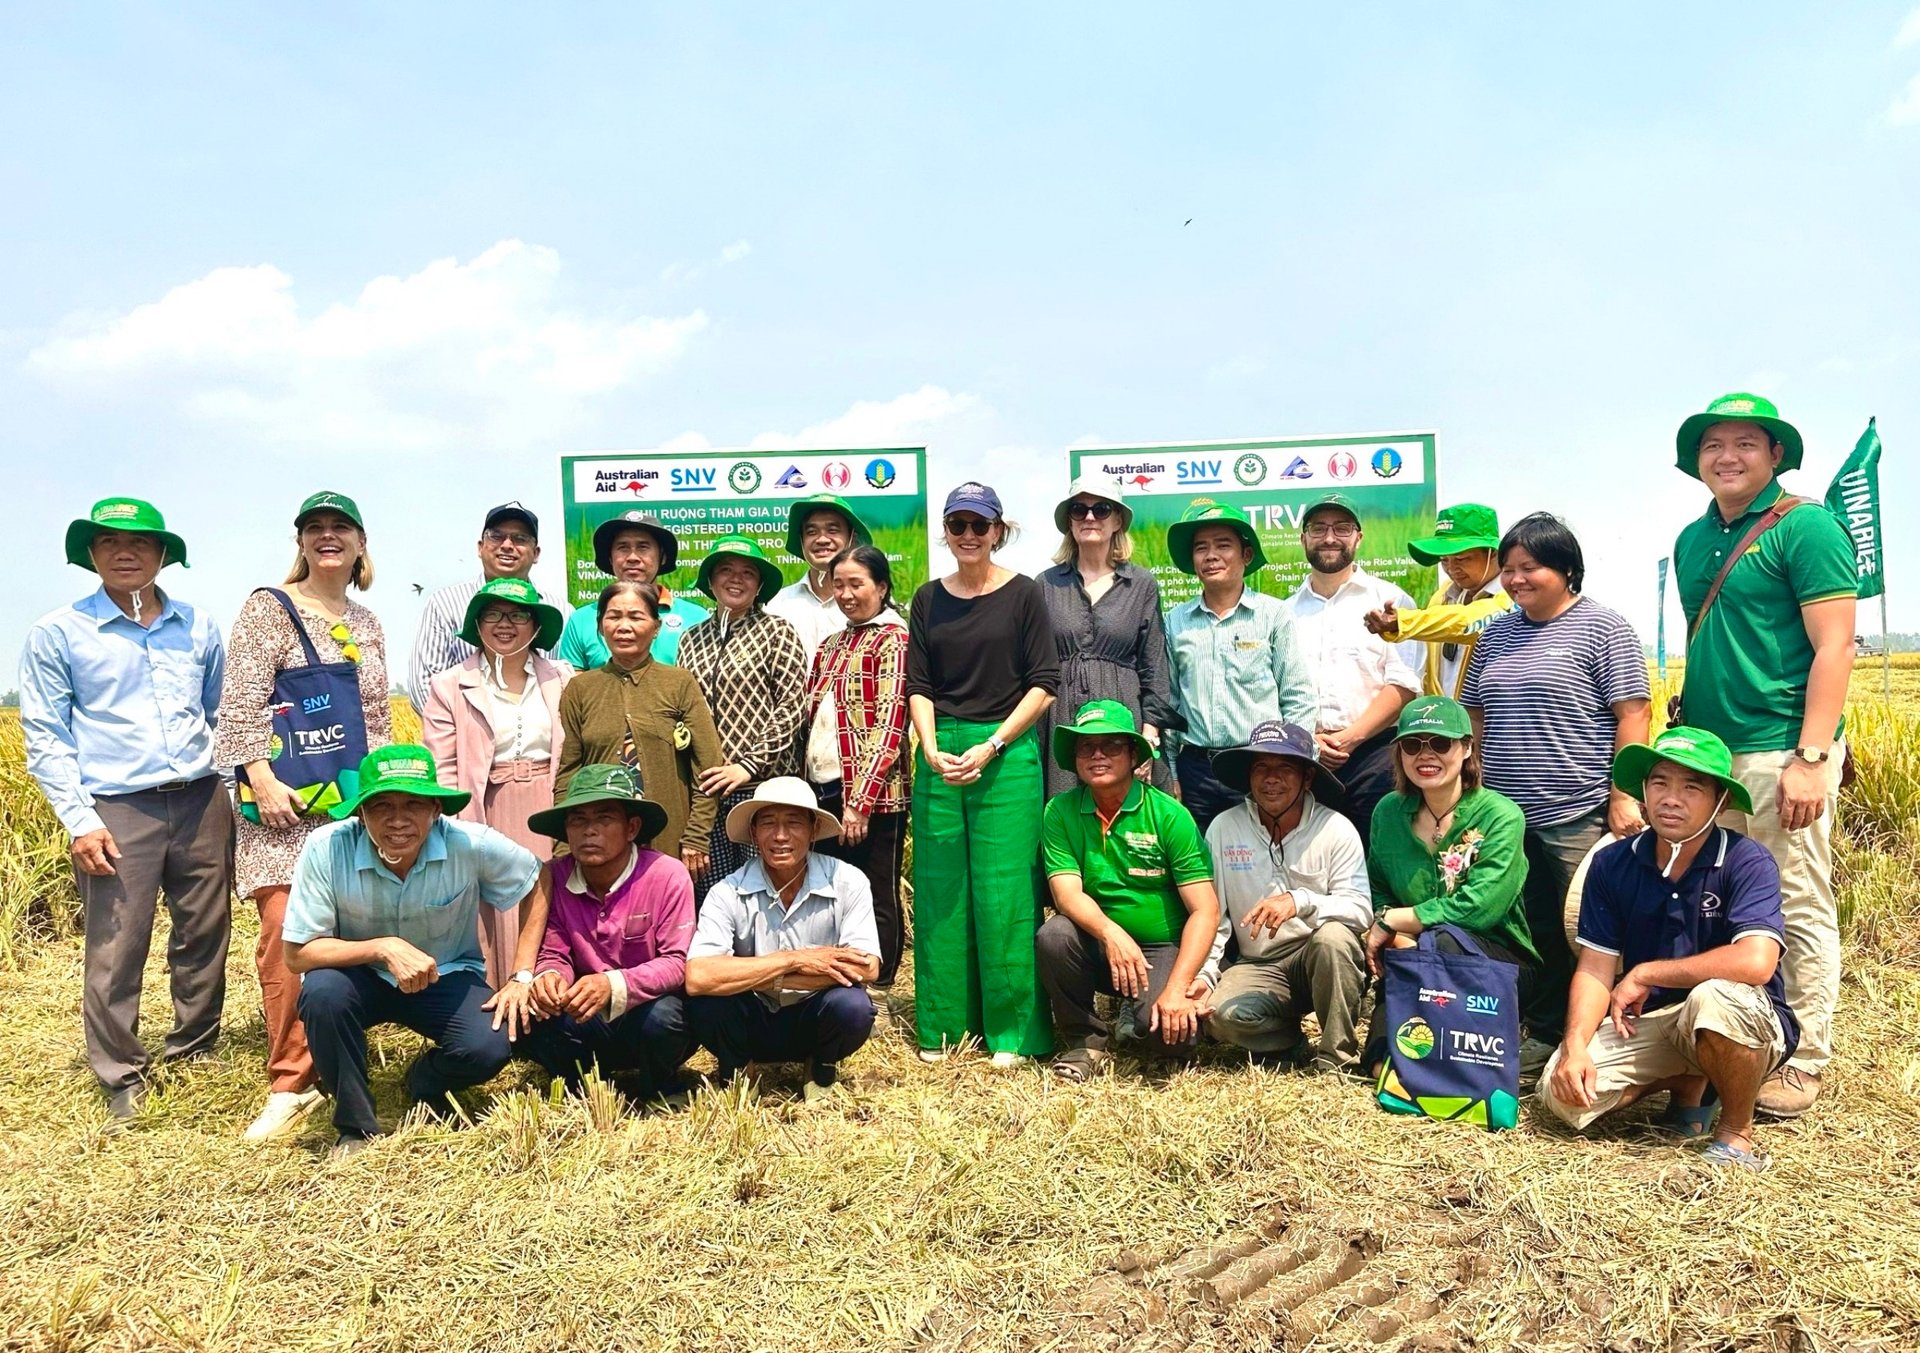 Bà con nông dân chụp ảnh cùng đoàn công tác do bà Kristin Tilley, Đại sứ Australia về biến đổi khí hậu - Bộ Ngoại giao và Thương mại Australia dẫn đầu khi thăm ruộng nhà ông Nguyễn Văn Khanh tại huyện Tam Nông, Đồng Tháp.